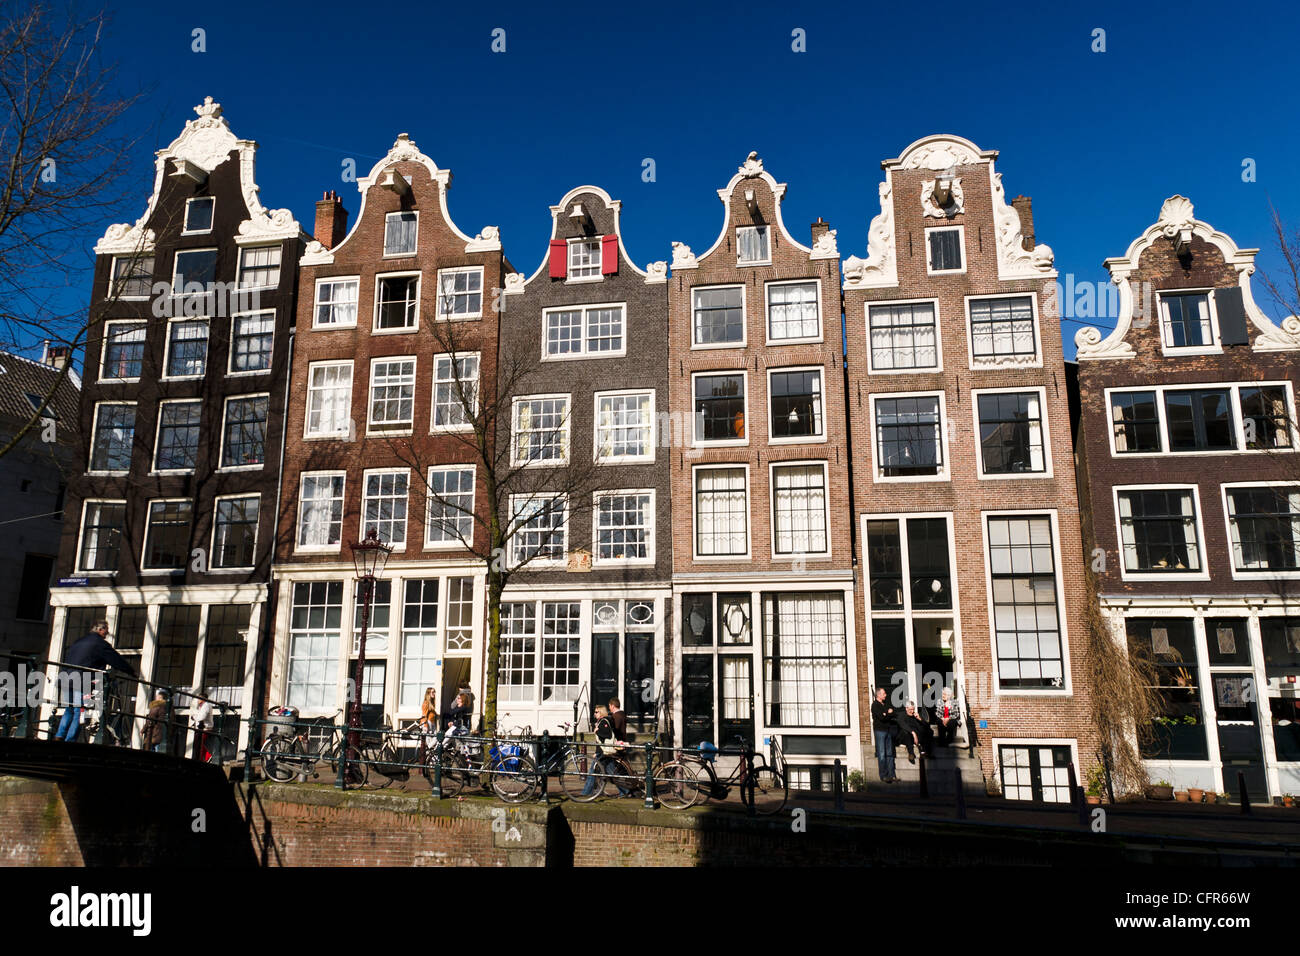 Holländische Giebel Häuser entlang der Brouwersgracht Kanal, Amsterdam, Niederlande. Stockfoto